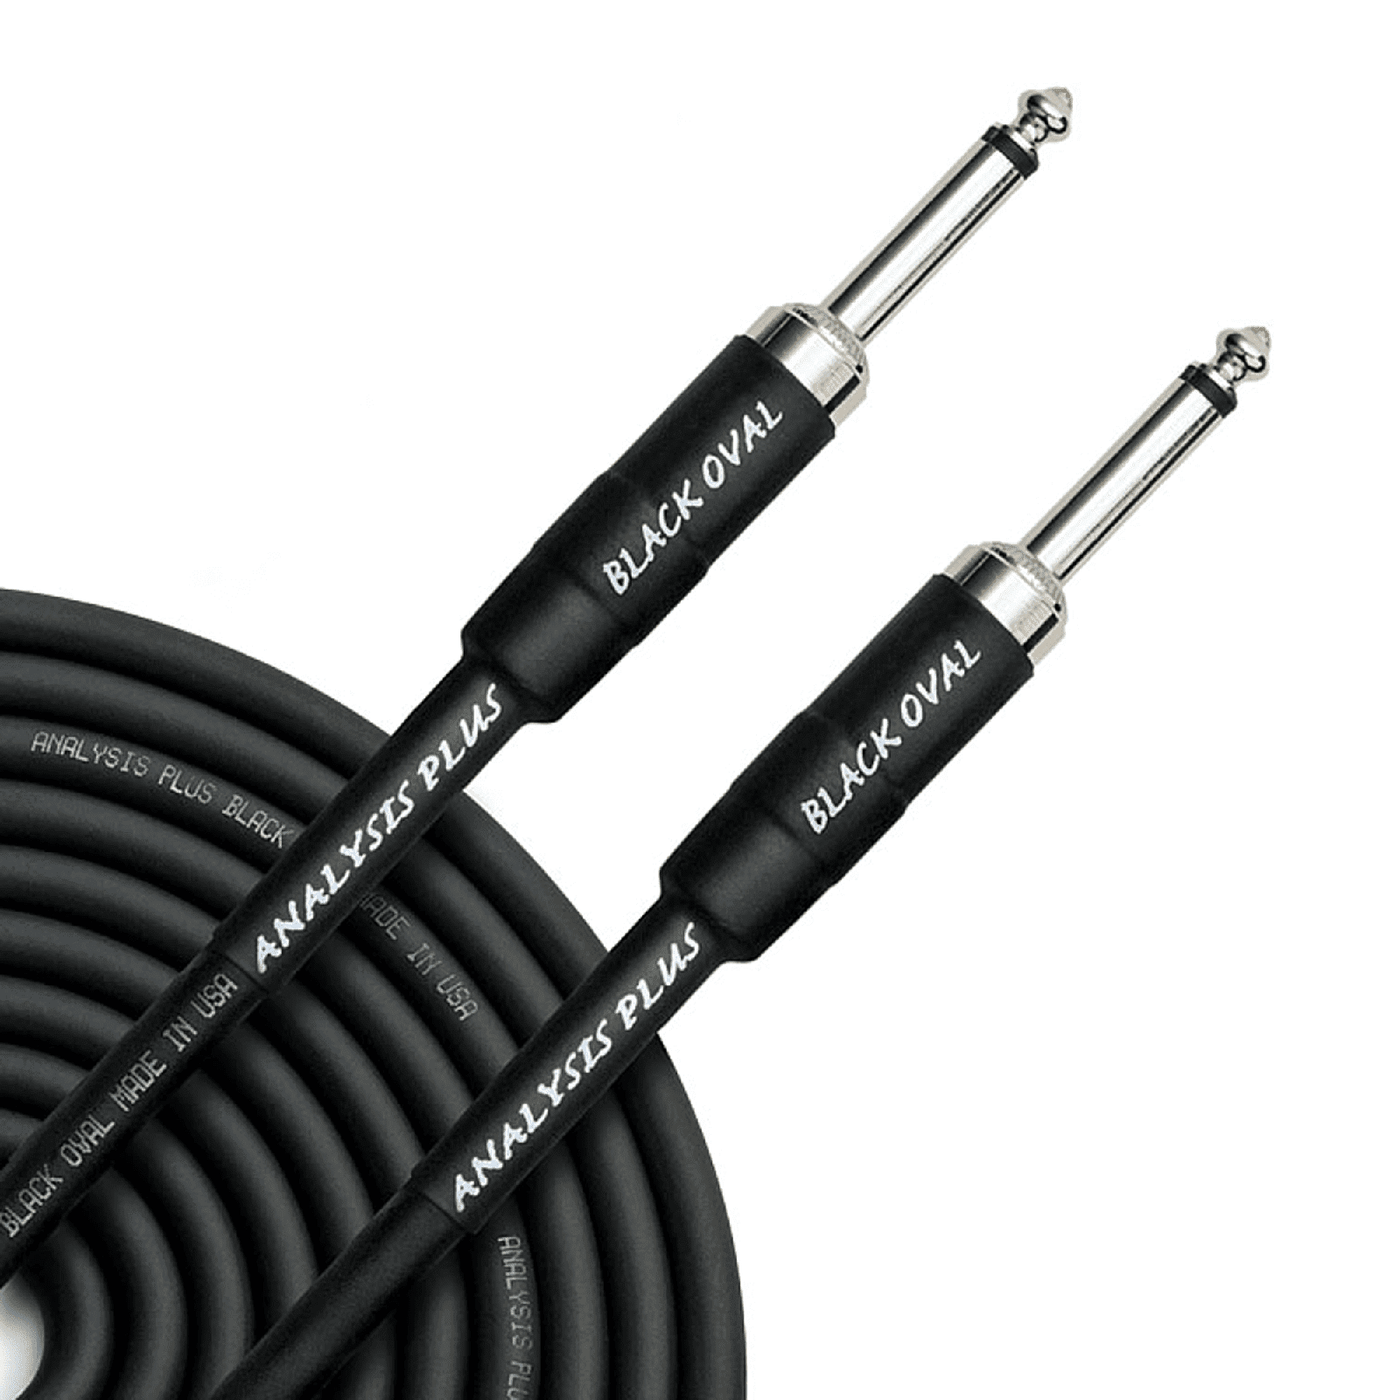 Analysis Plus Black Oval - Cable Instrumento - El cable Black Oval es silencioso, flexible y suena la raja. Un cable de alta gama a muy buen precio. Además cumple con todas las normas ROHS. El cable tiene conductores de calibre 20, una funda conductora pa